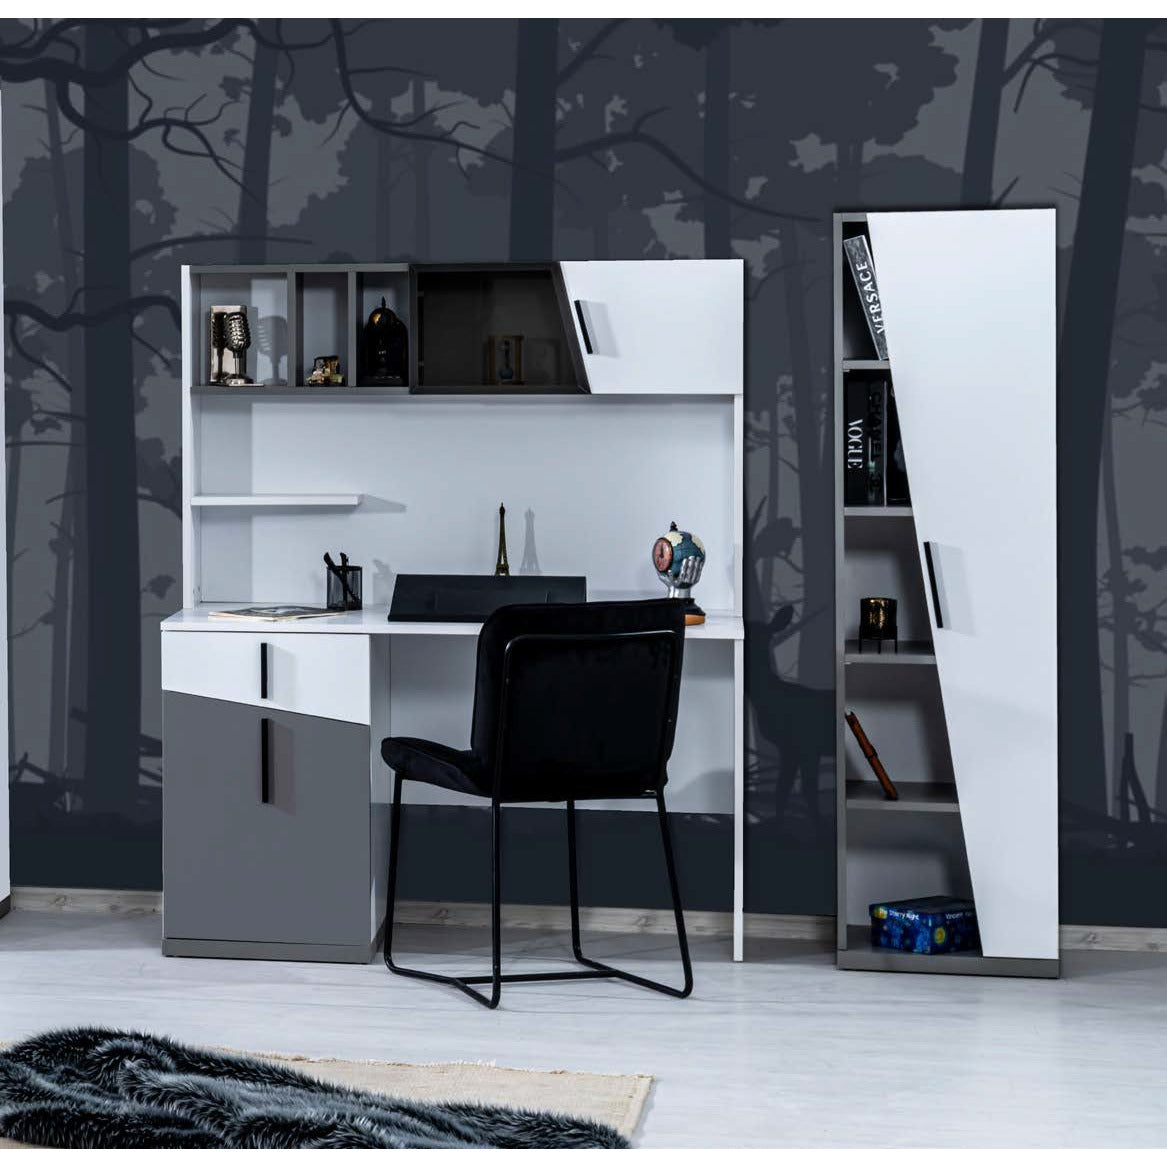 Elit Skrivbord - LINE Furniture Group